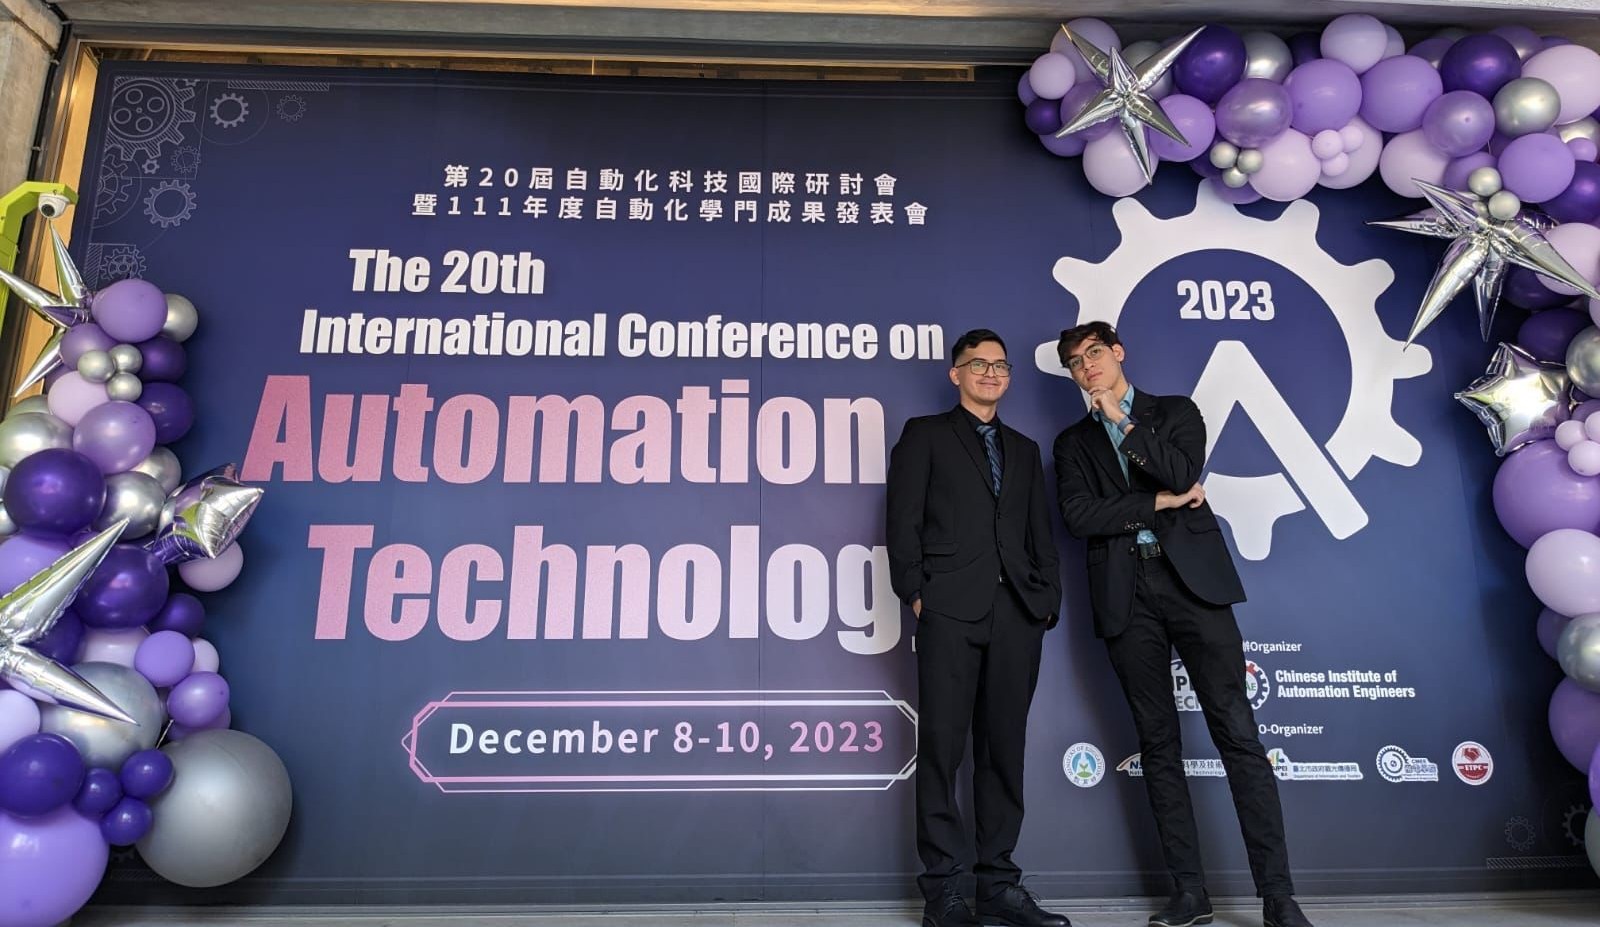 恭喜實驗室 Alejandro與Bruno獲得Automation2023最佳口頭演說論文獎